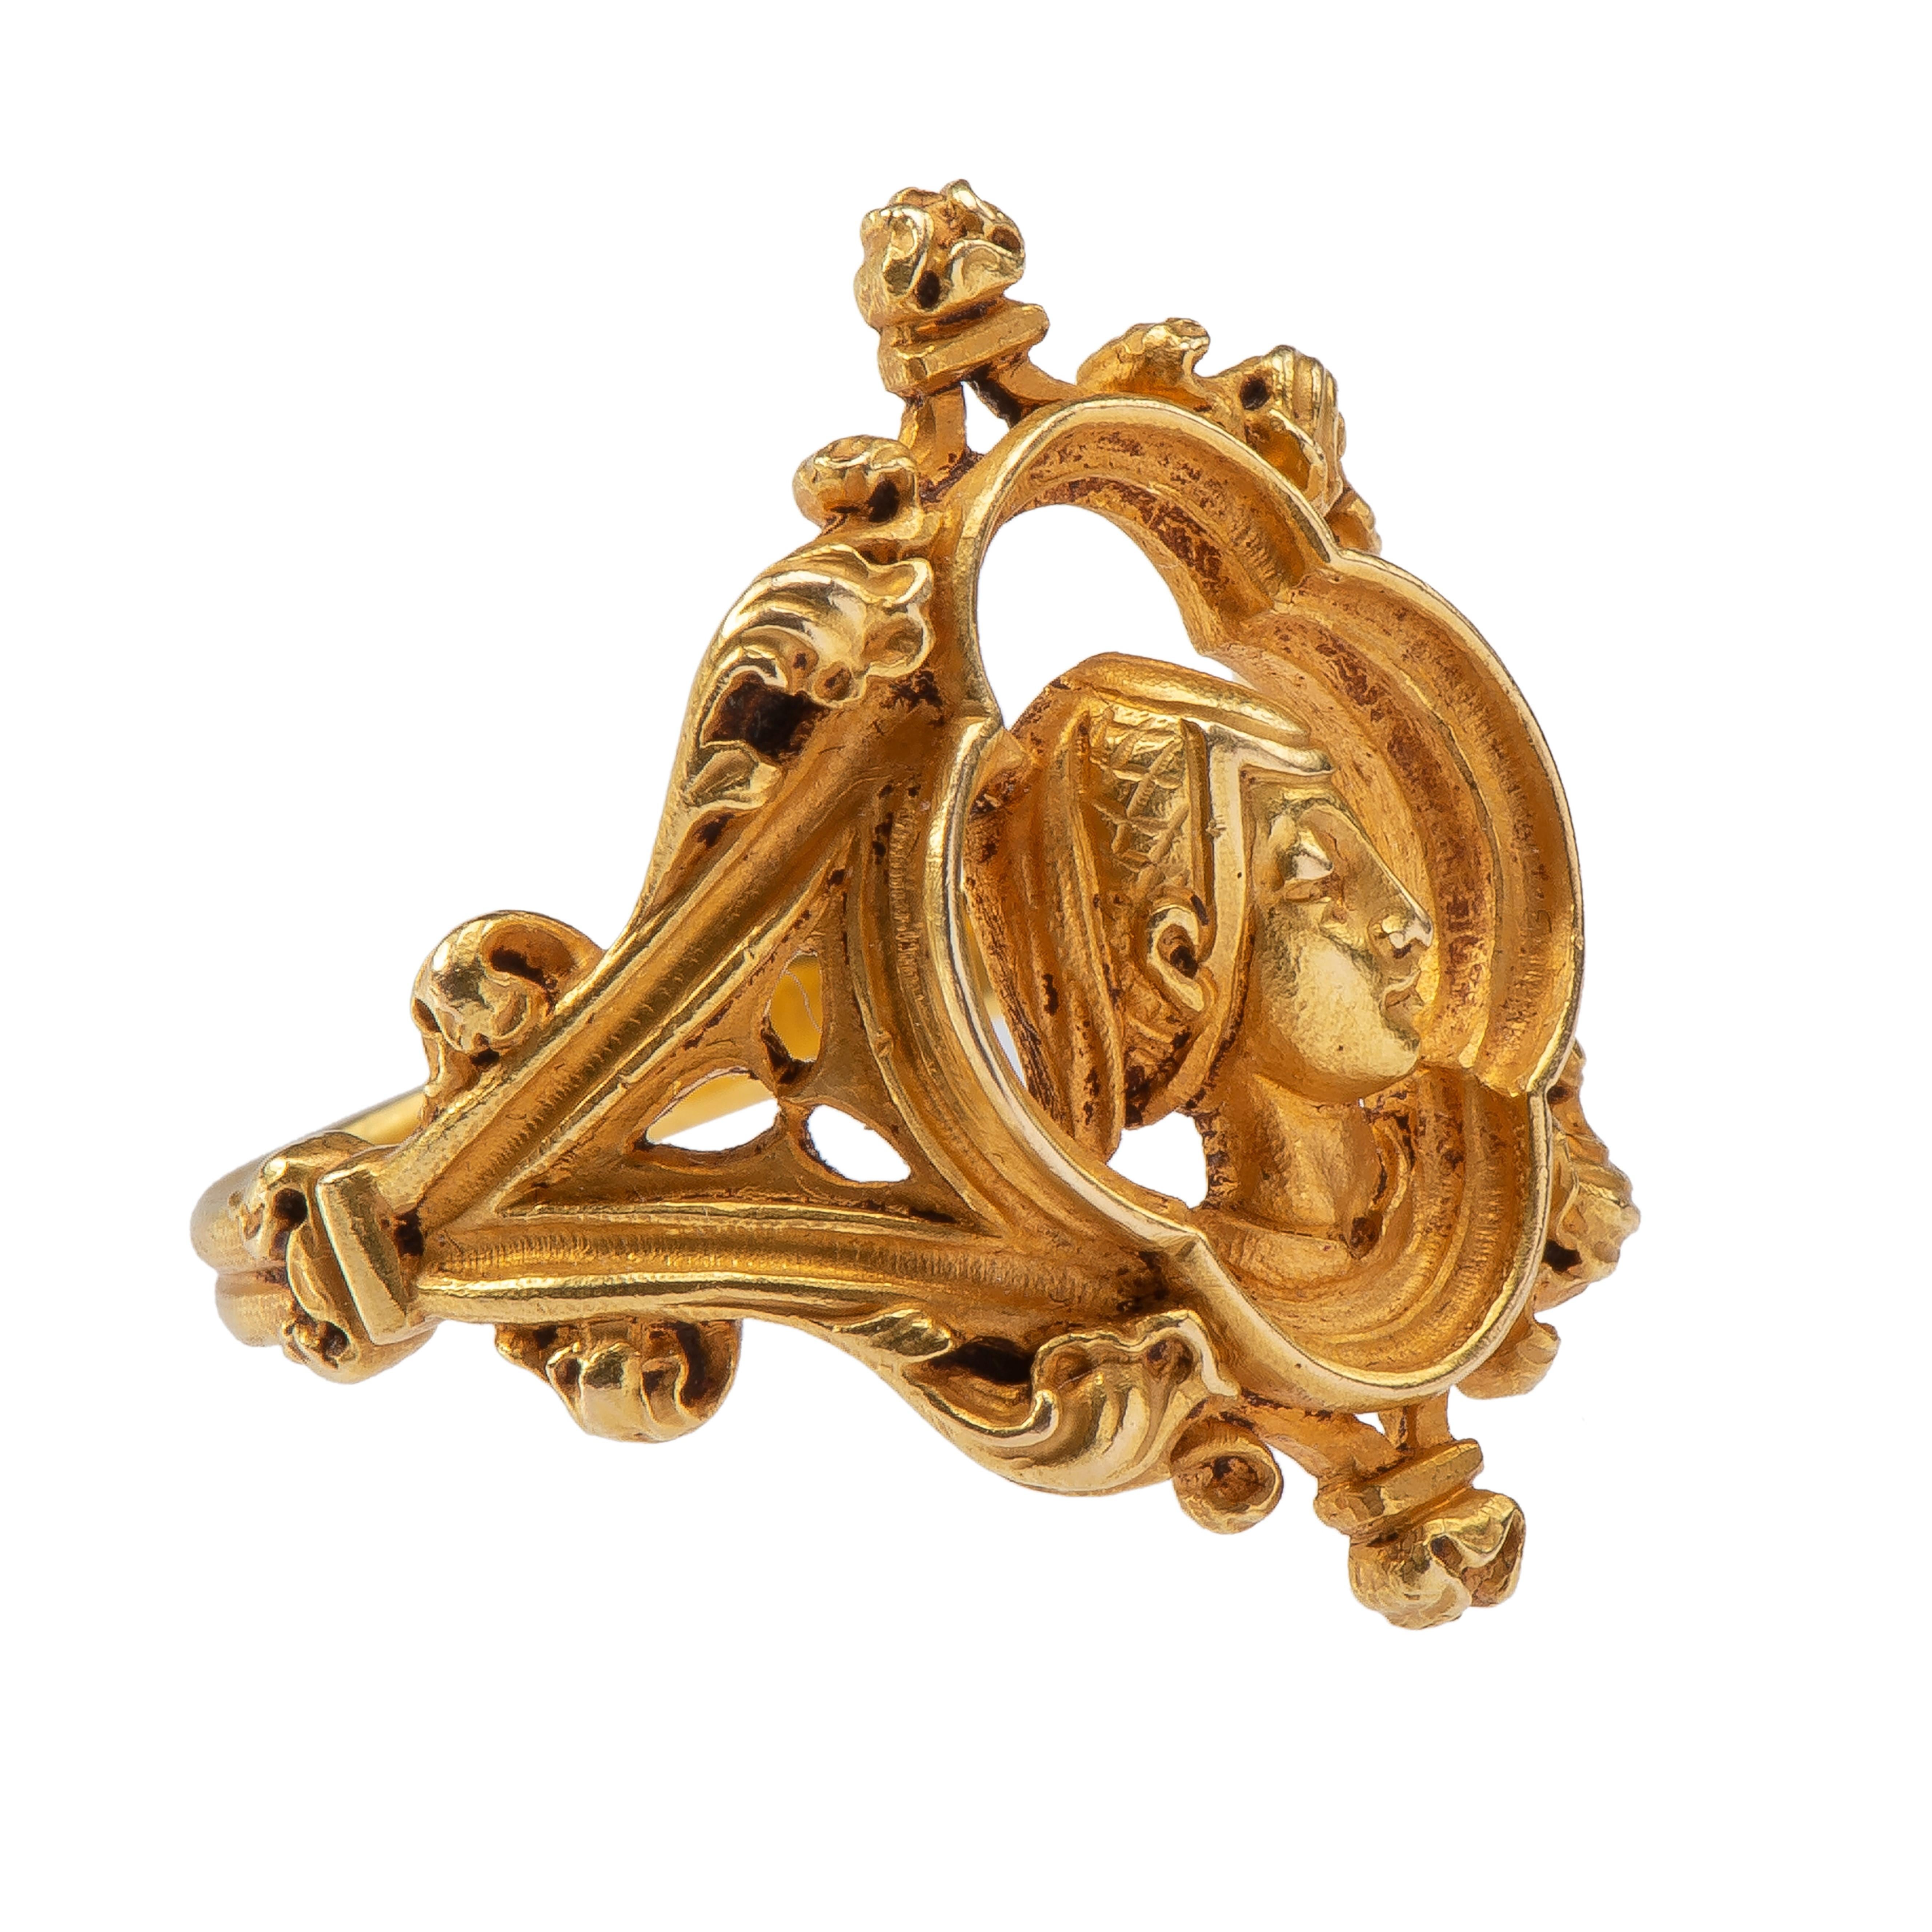 Ring der Jeanne d'Arc von Louis Wièse (1852-1930)
Frankreich, um 1890
Gold
Gewicht 9,3 gr.; Umfang 56,45 mm; US Größe 7 3/4; UK Größe P ½

Gegossener und ziselierter, durchbrochener Goldring mit quadratischem Querschnitt, der in der unteren Hälfte